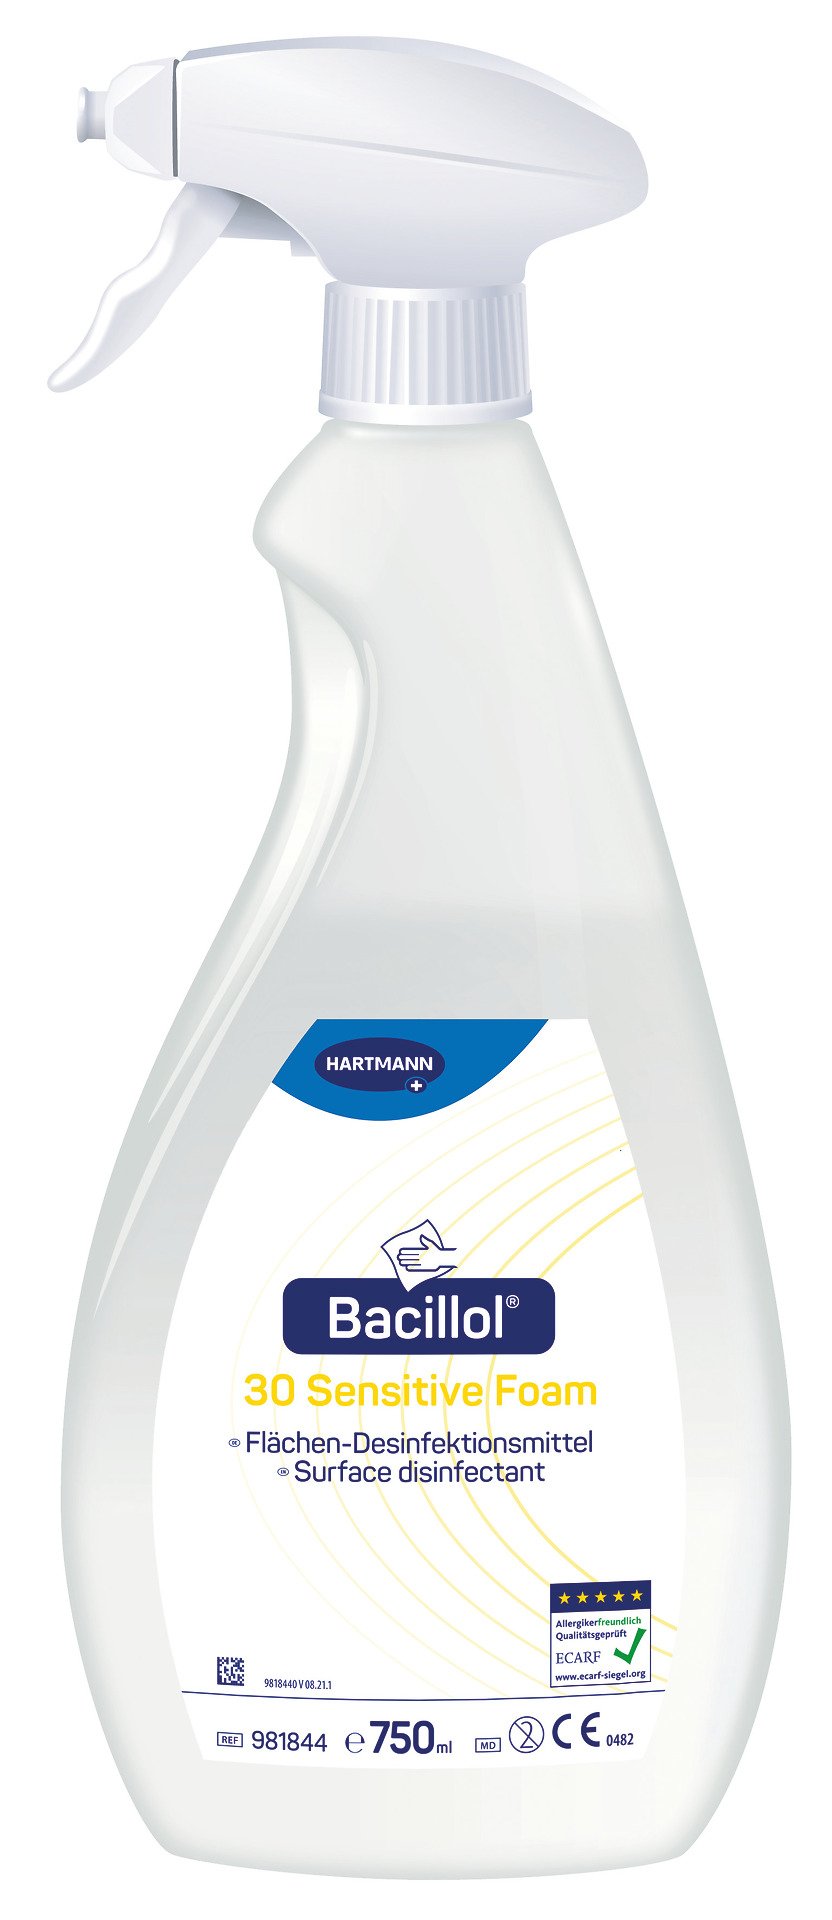 Hartmann Bacillol 30 Sensitive Foam Schnelldesinfektion, 750 ml Sprühflasche